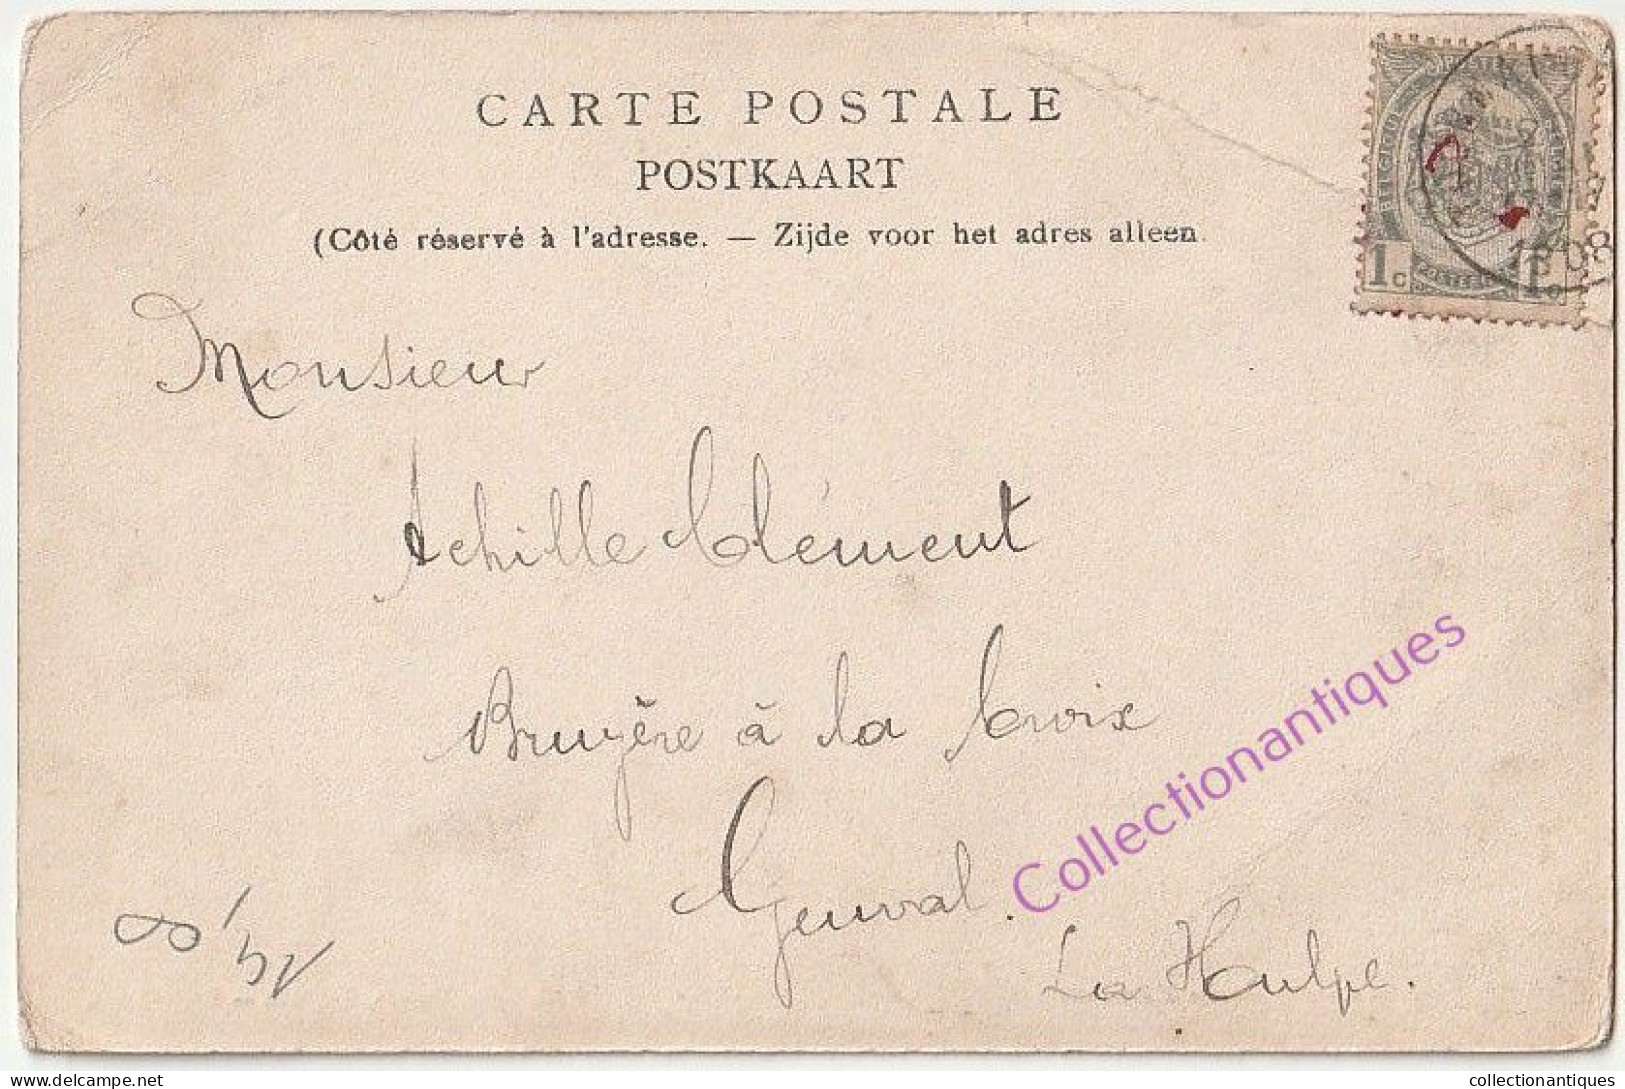 CPA Enghien - Porte D'Hoves - Circulée - Non Divisé - 1908 - Edit. Edm. Duwez, Enghien - Edingen